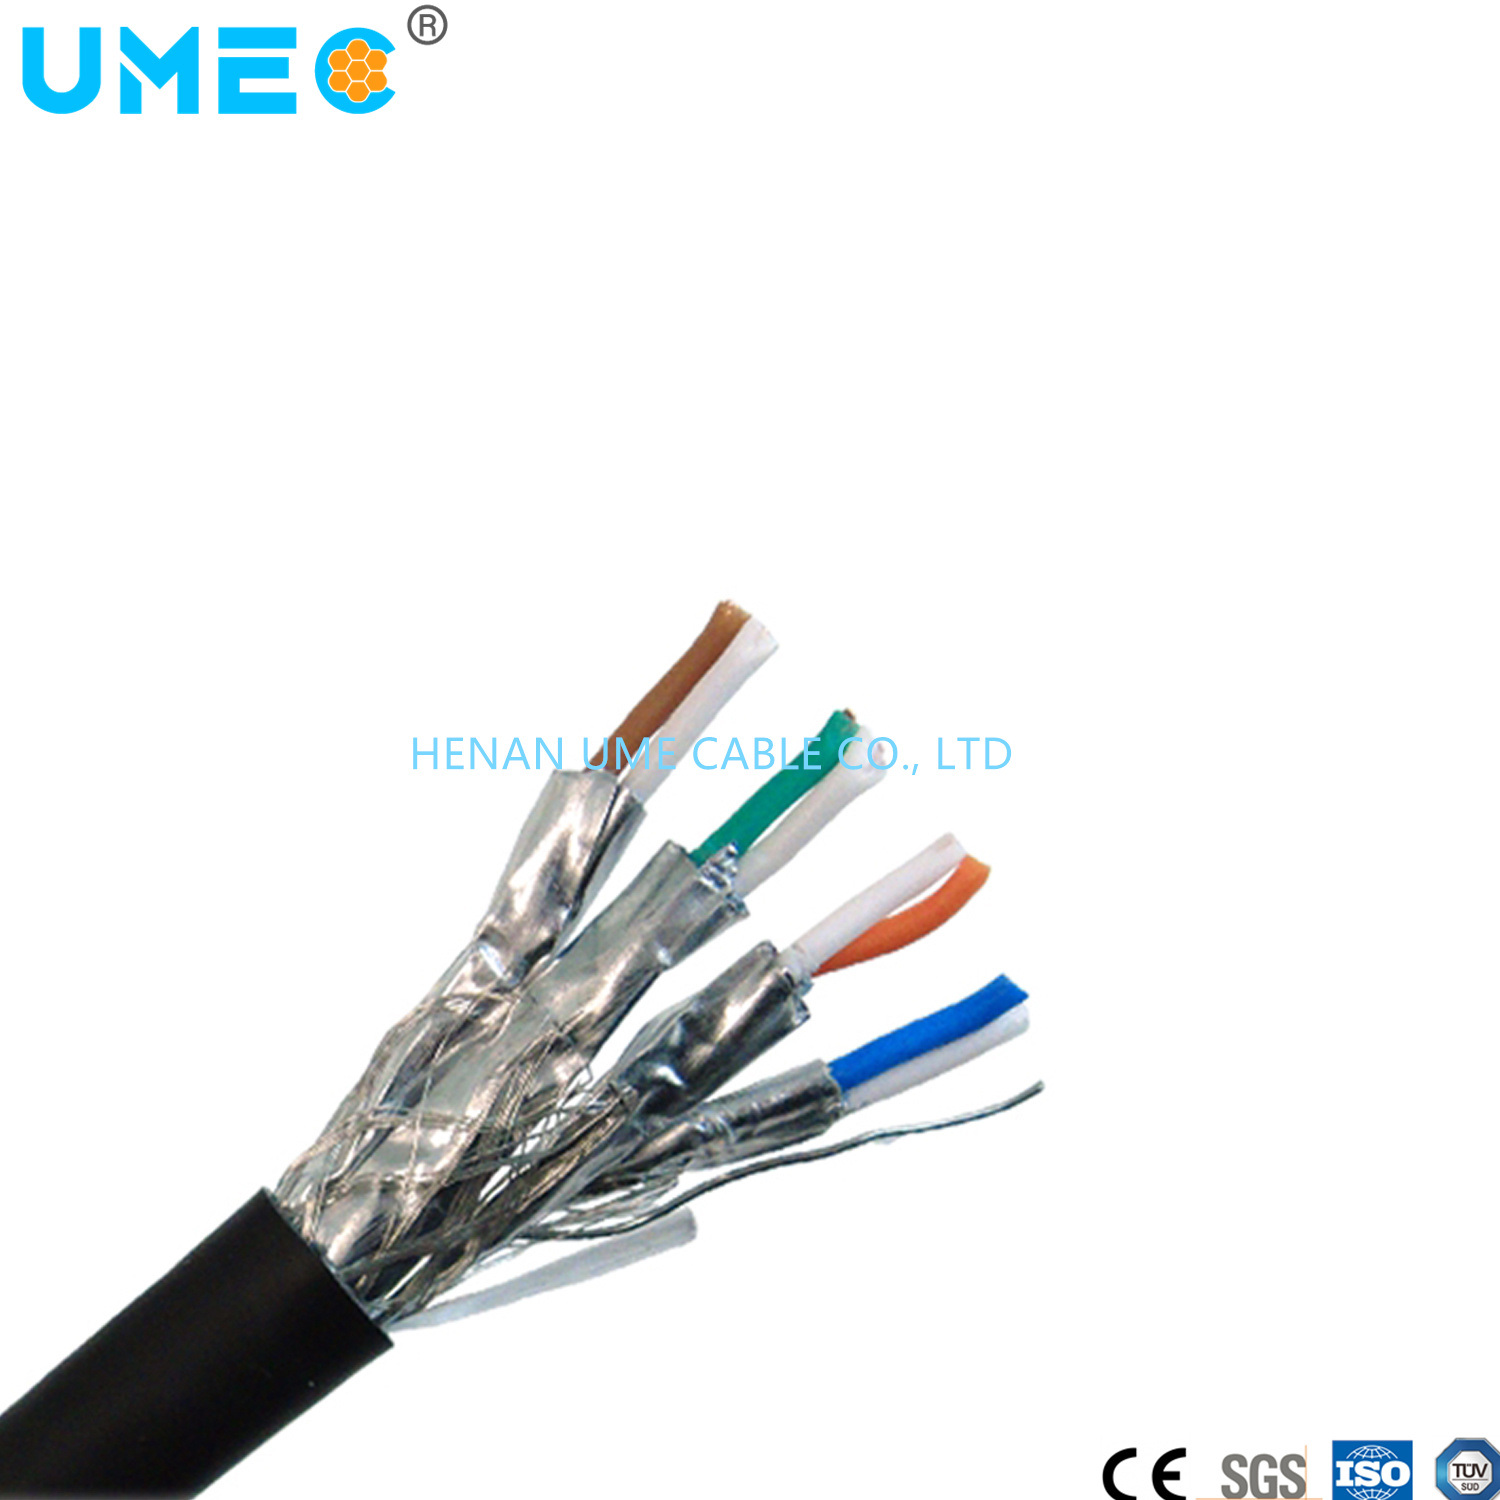 
                Compatibilità elettromagnetica EMC cavo Li2ycy per trasmissione di dati e segnali
            